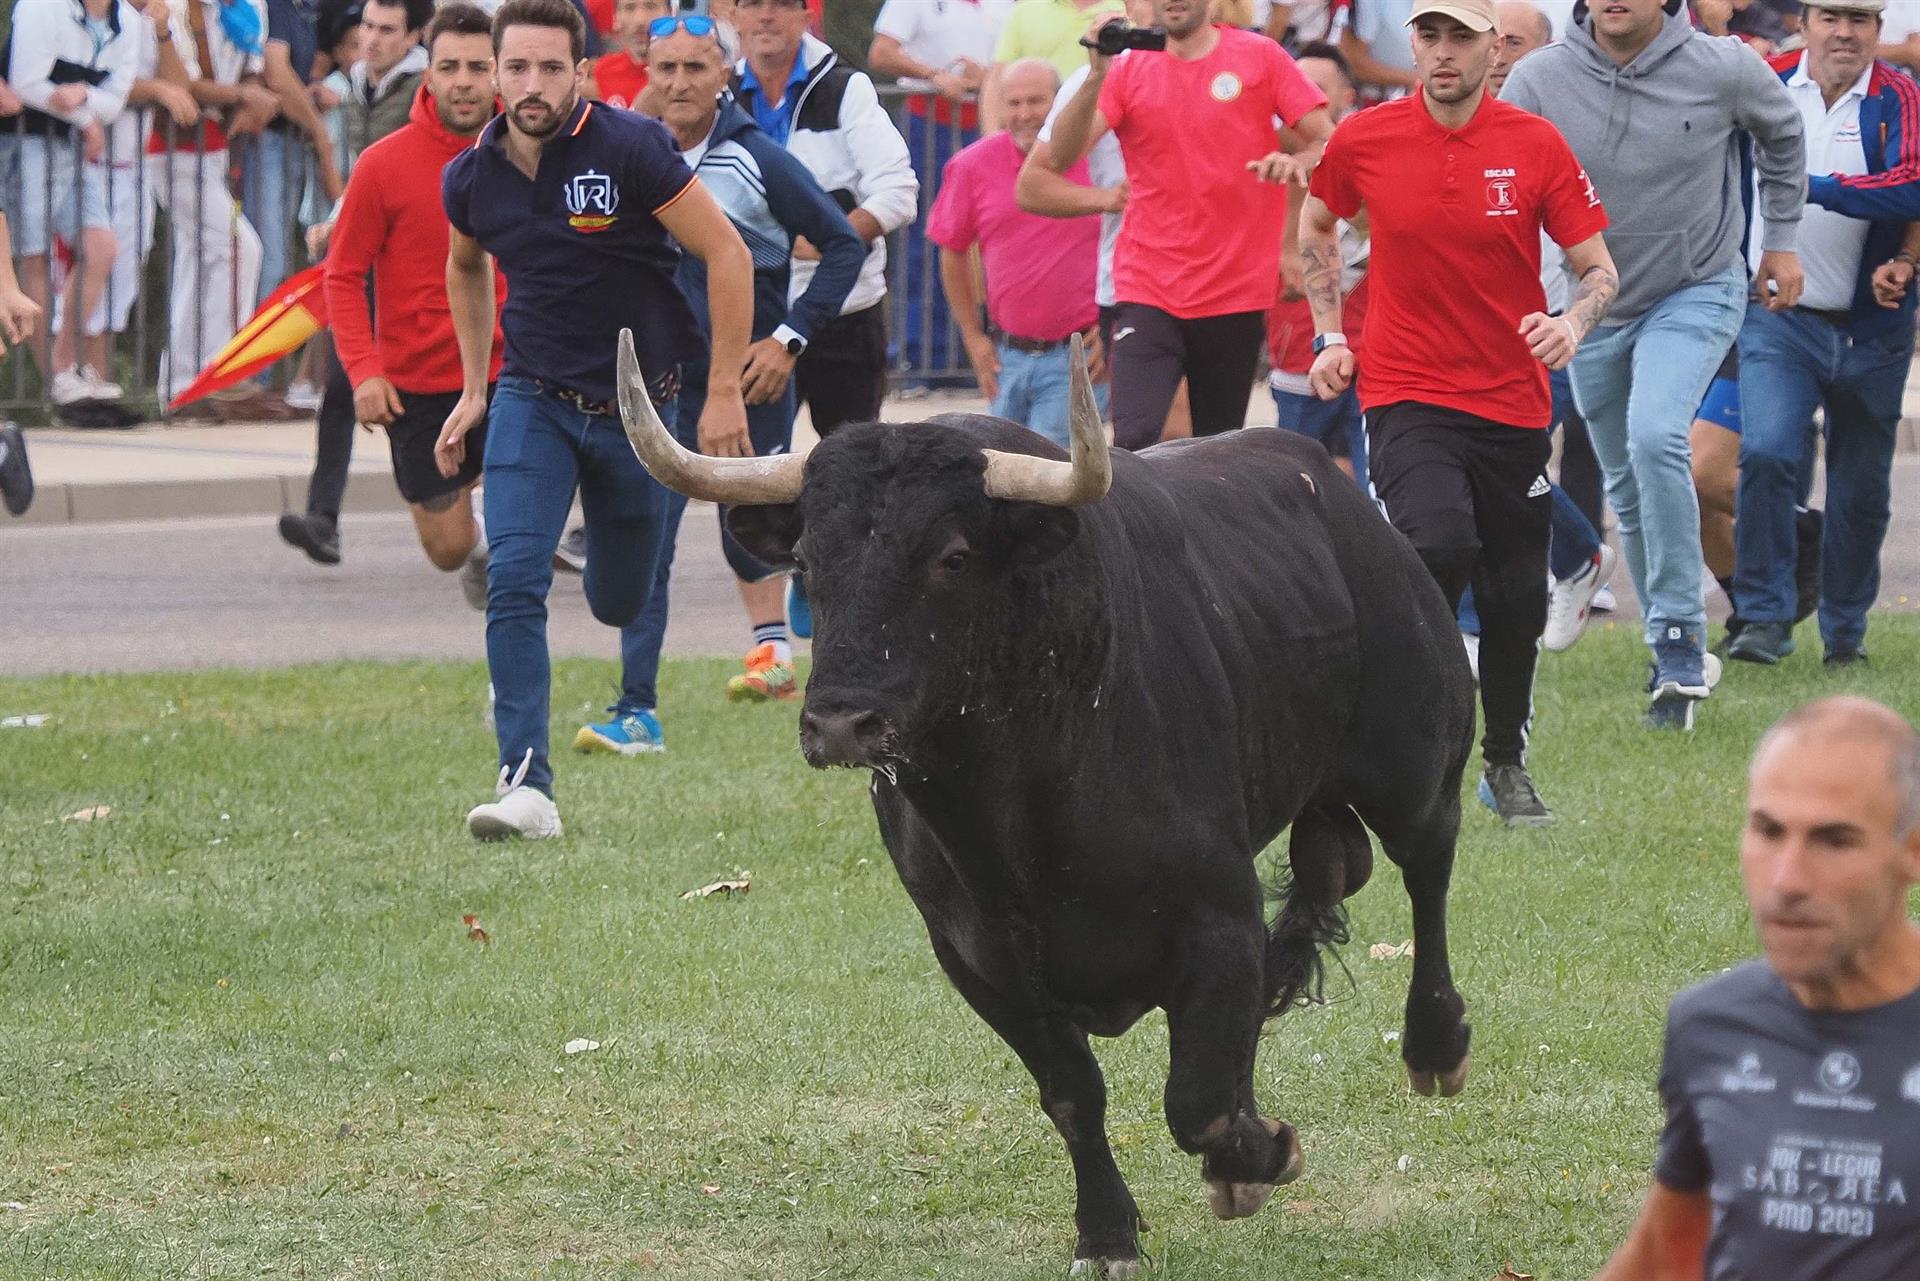 Varias personas rodean al toro "Manjar" durante la celebración del festejo del Toro de la Vega (Valladolid) en Tordesillas, este martes. EFE/ R. García
